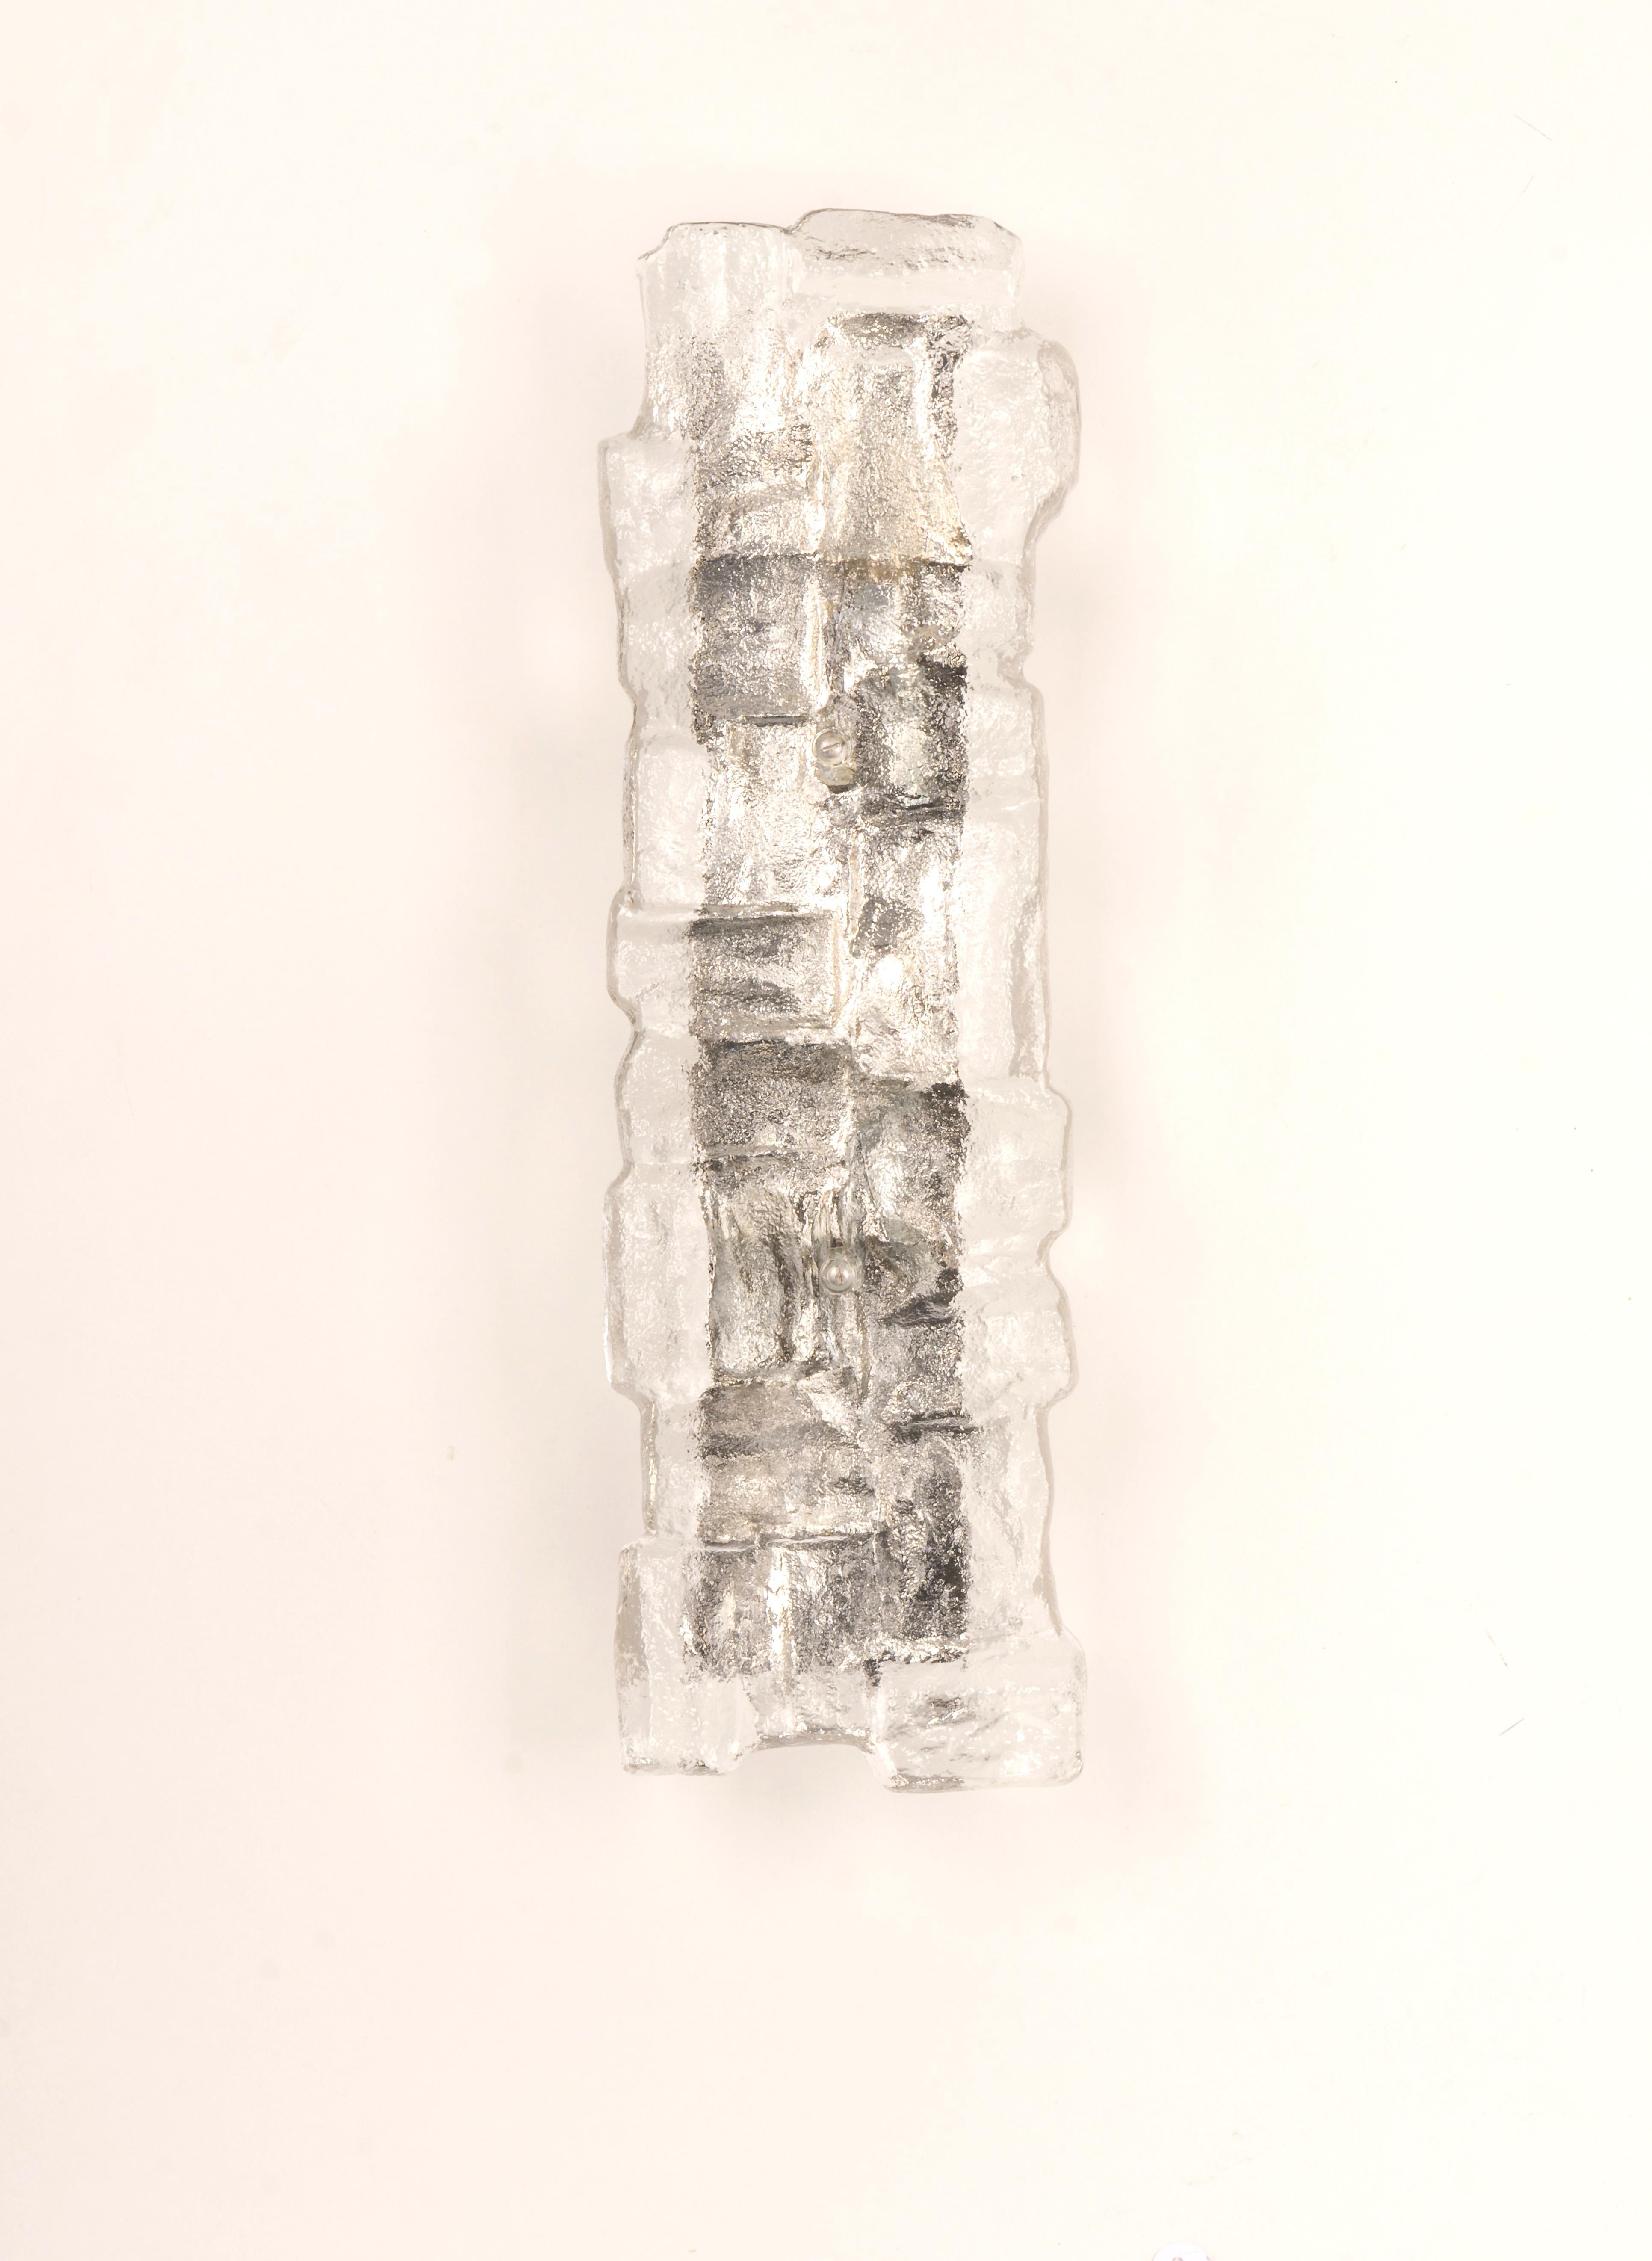 Fantastisches Paar Wandleuchter aus der Mitte des Jahrhunderts mit extragroßen Murano-Glasstücken in jeder Lampe, hergestellt von Kalmar, Österreich, ca. 1960-1969.
Großartige geometrische Form.
Serie: Peru

Jede Leuchte benötigt drei kleine